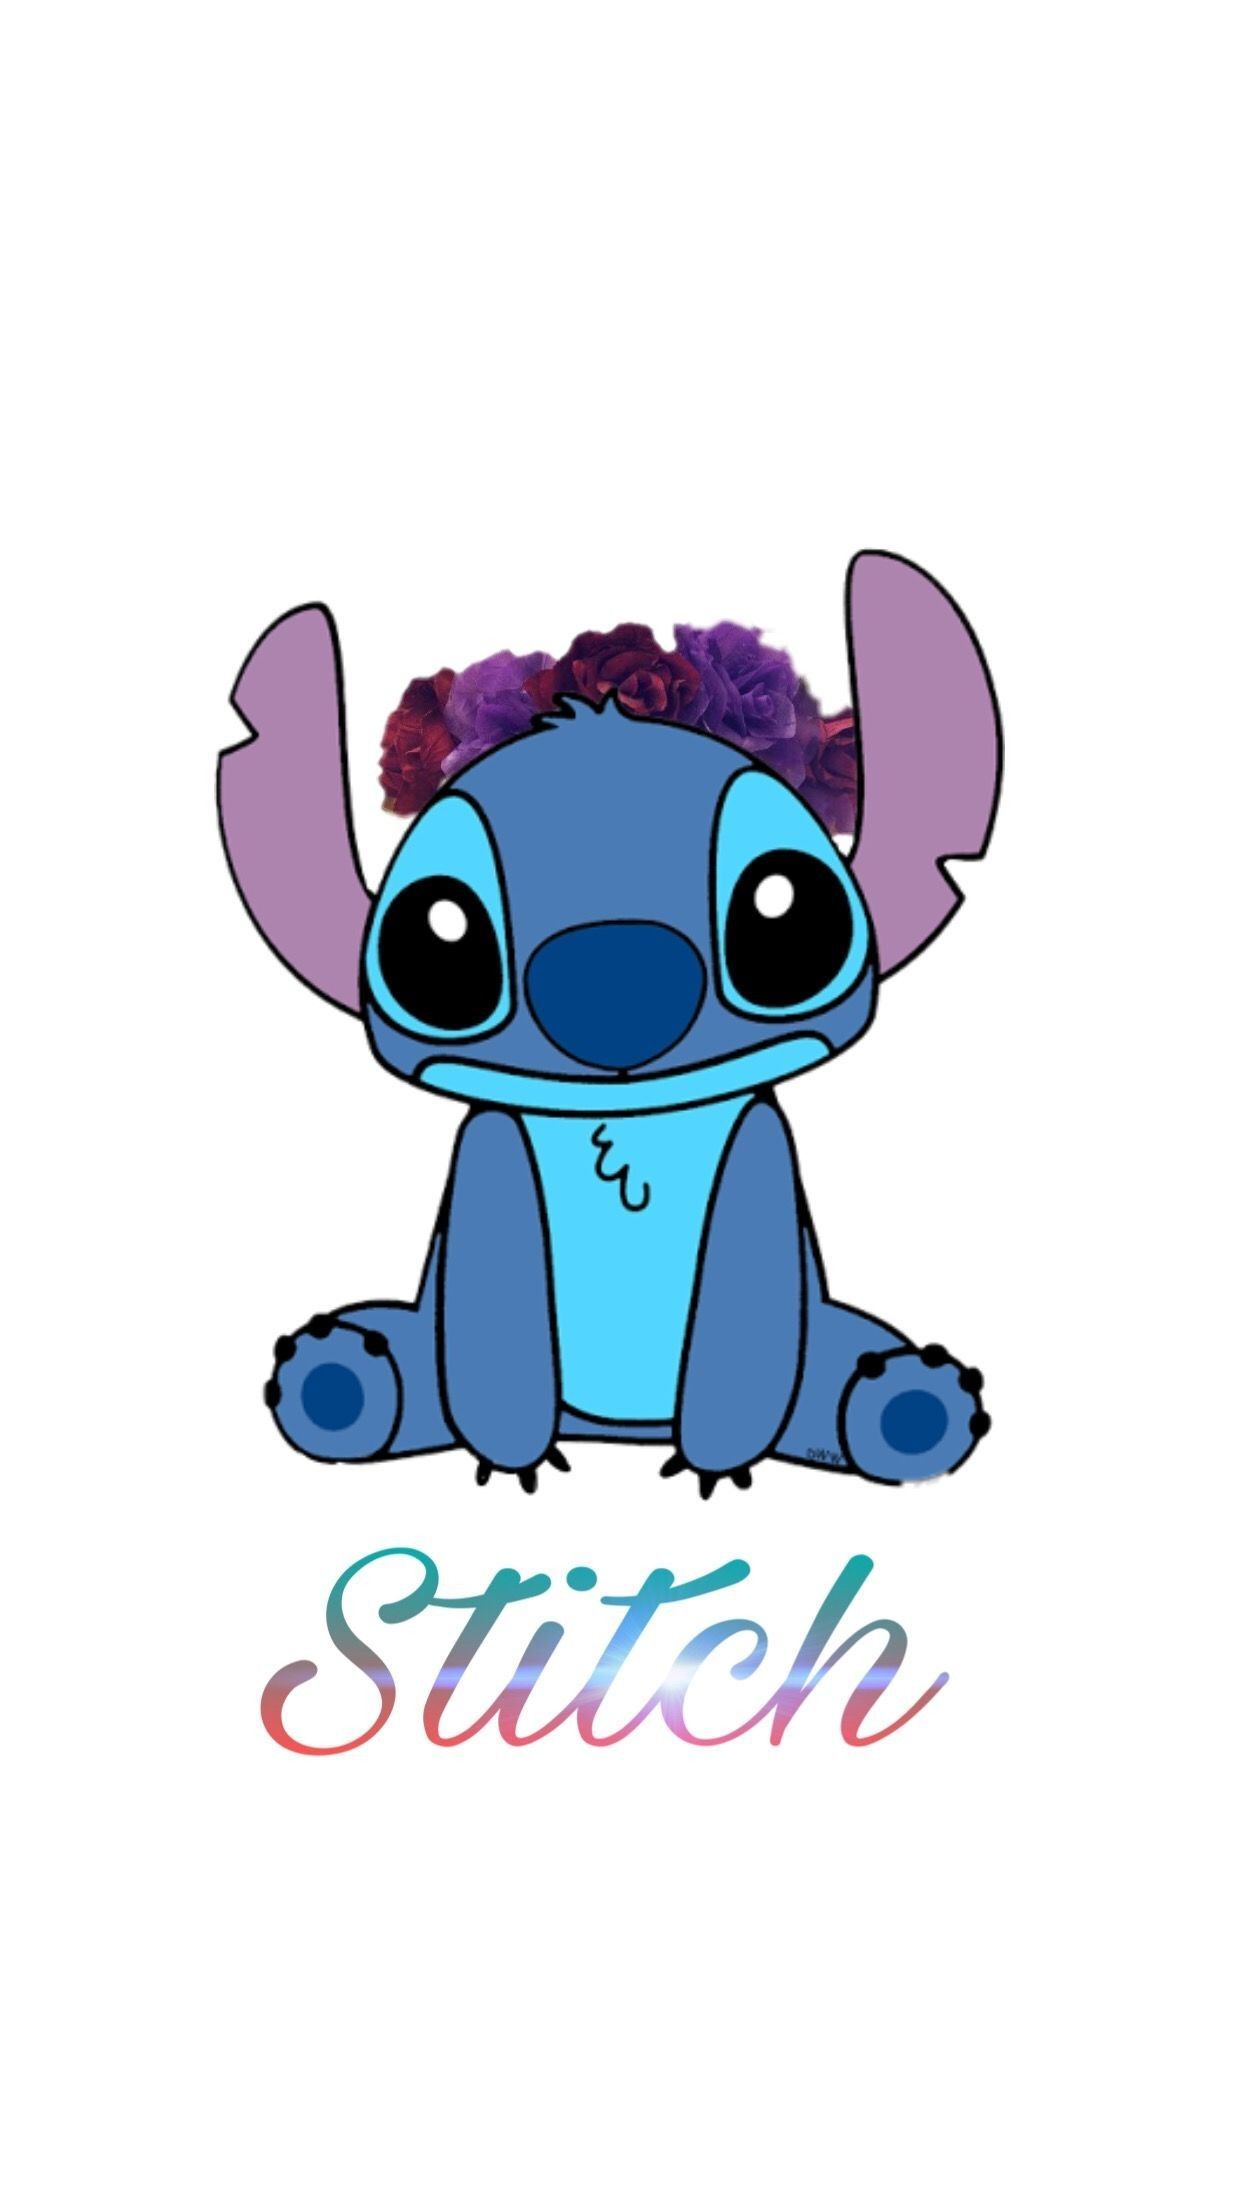 Nền tảng Stitch đáng yêu này sẽ giúp cho màn hình của bạn trở nên nổi bật và truyền tải sự vui tươi cho những người khác xung quanh. Hãy chọn nền tảng stitch và tạo nên một điểm nhấn đặc biệt cho thiết bị của bạn ngay hôm nay.